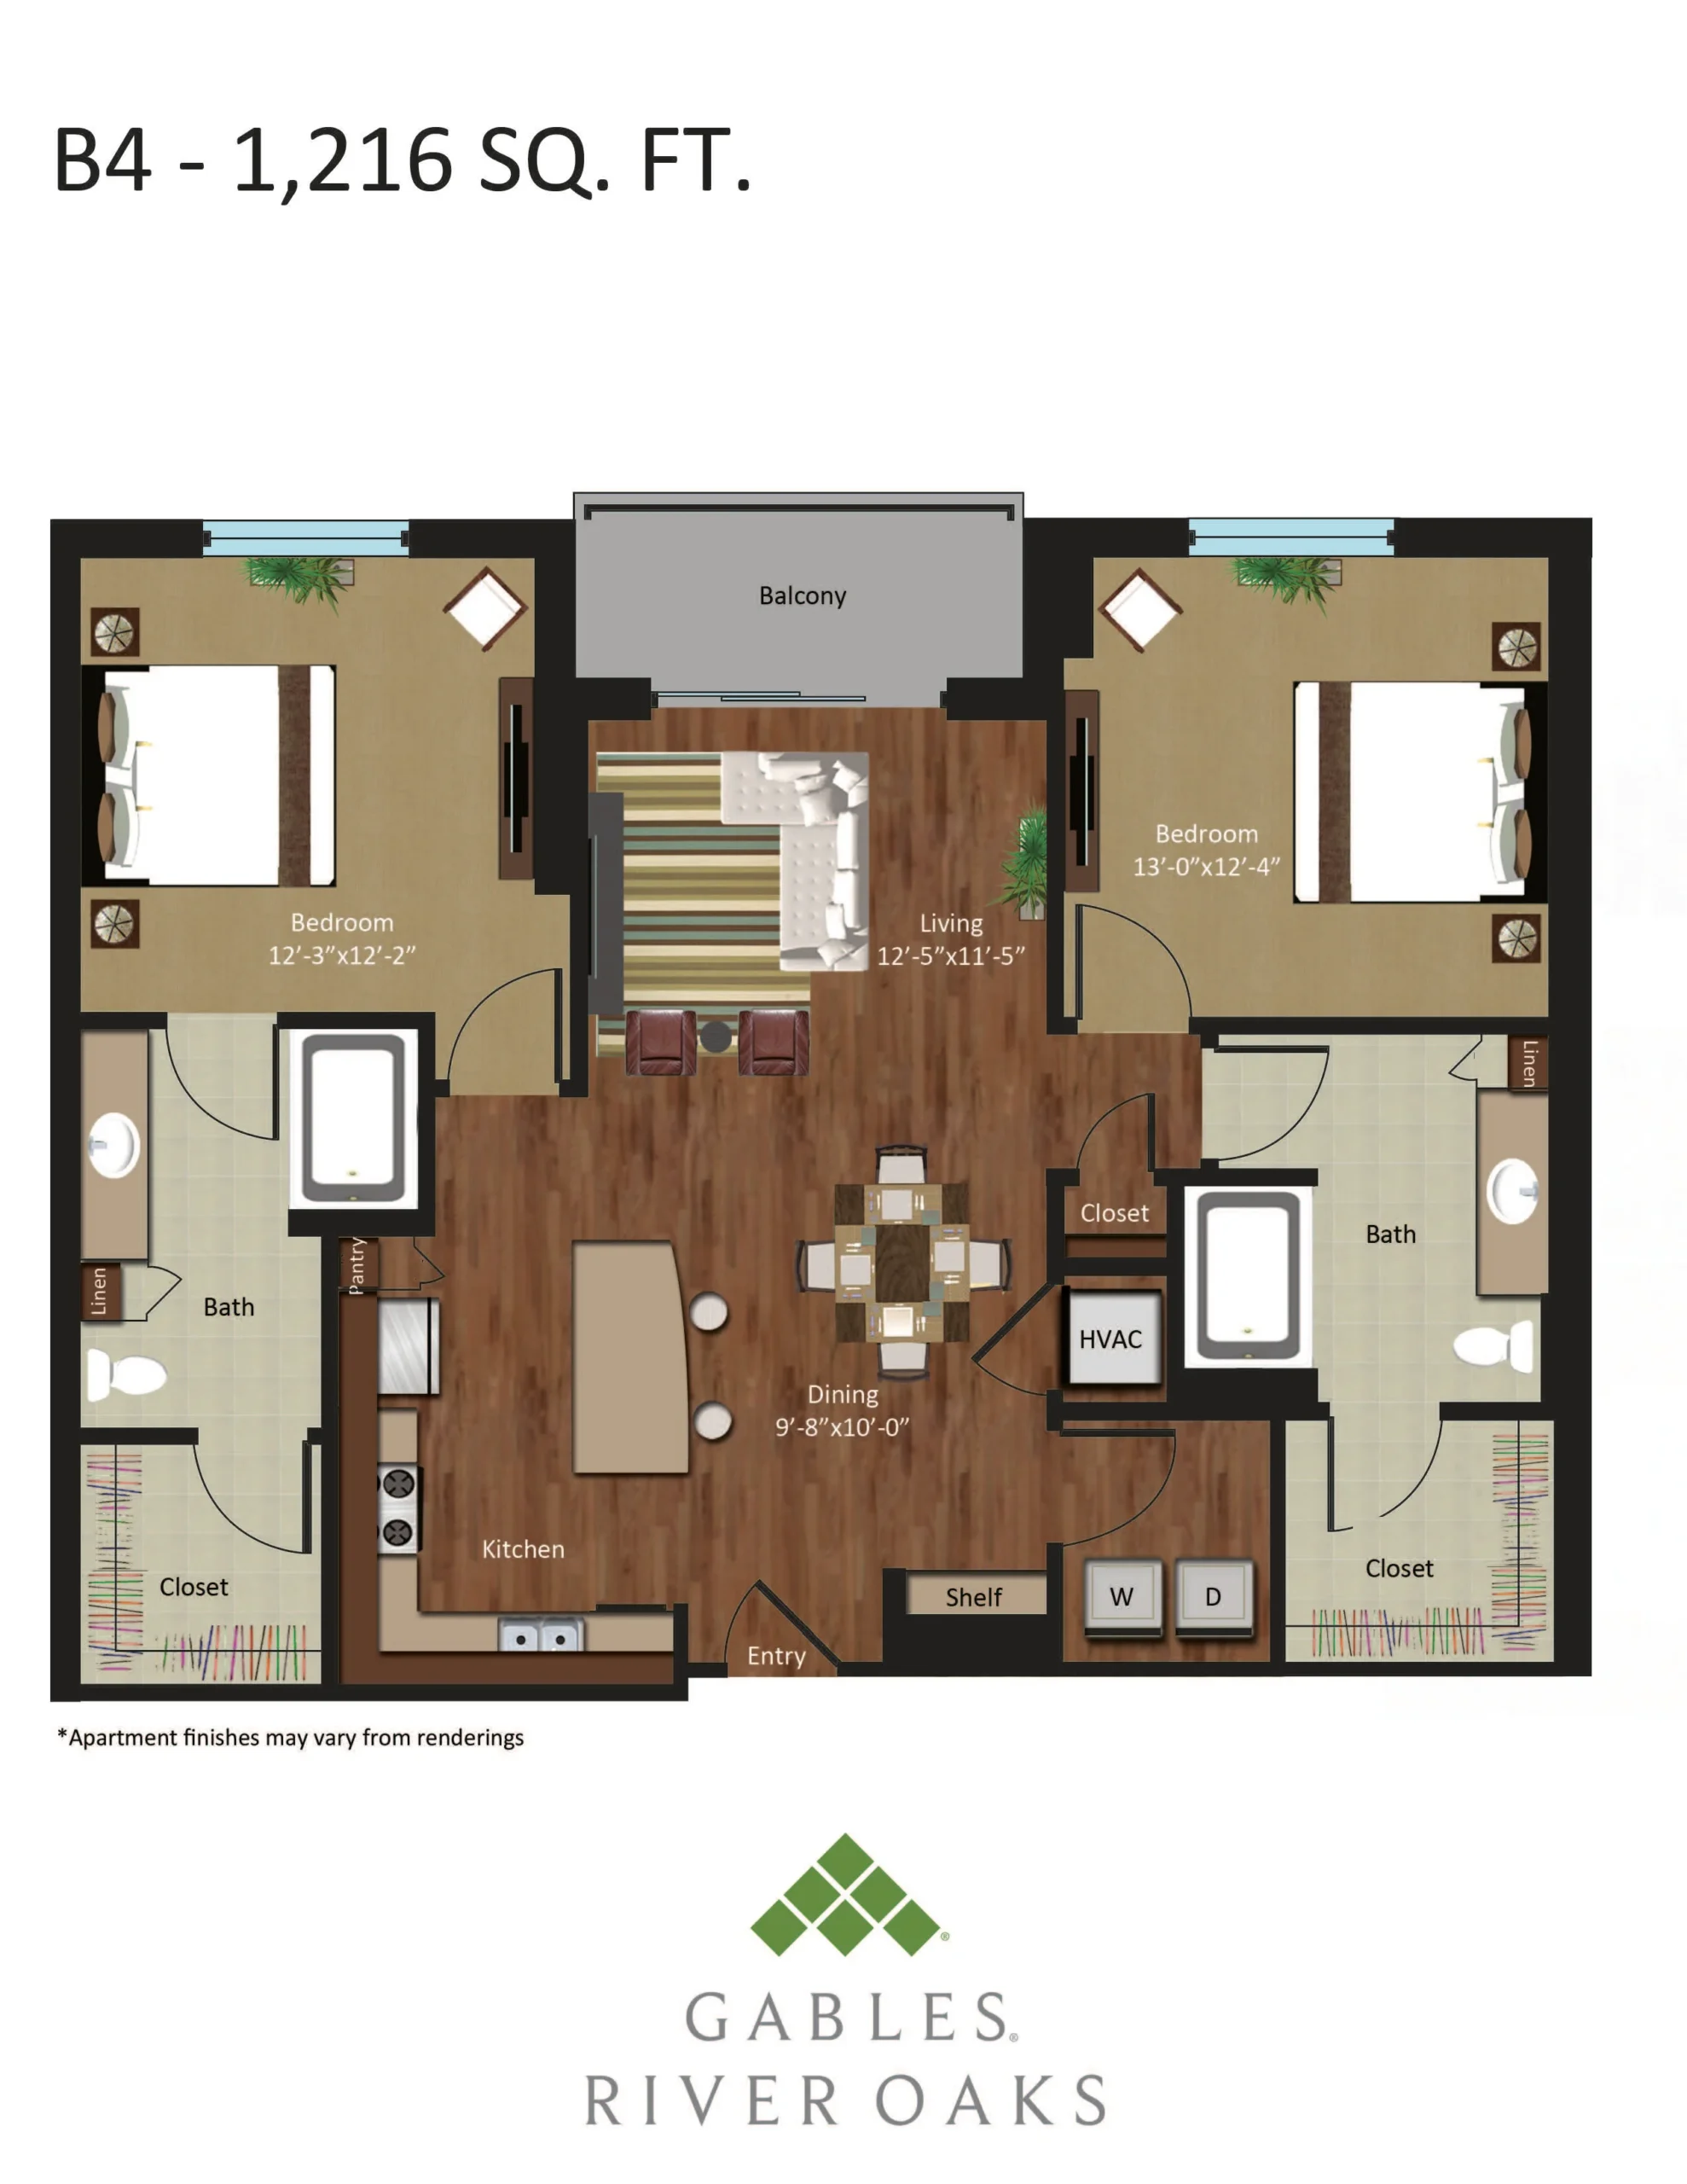 Gables River Oaks Floor Plan 28